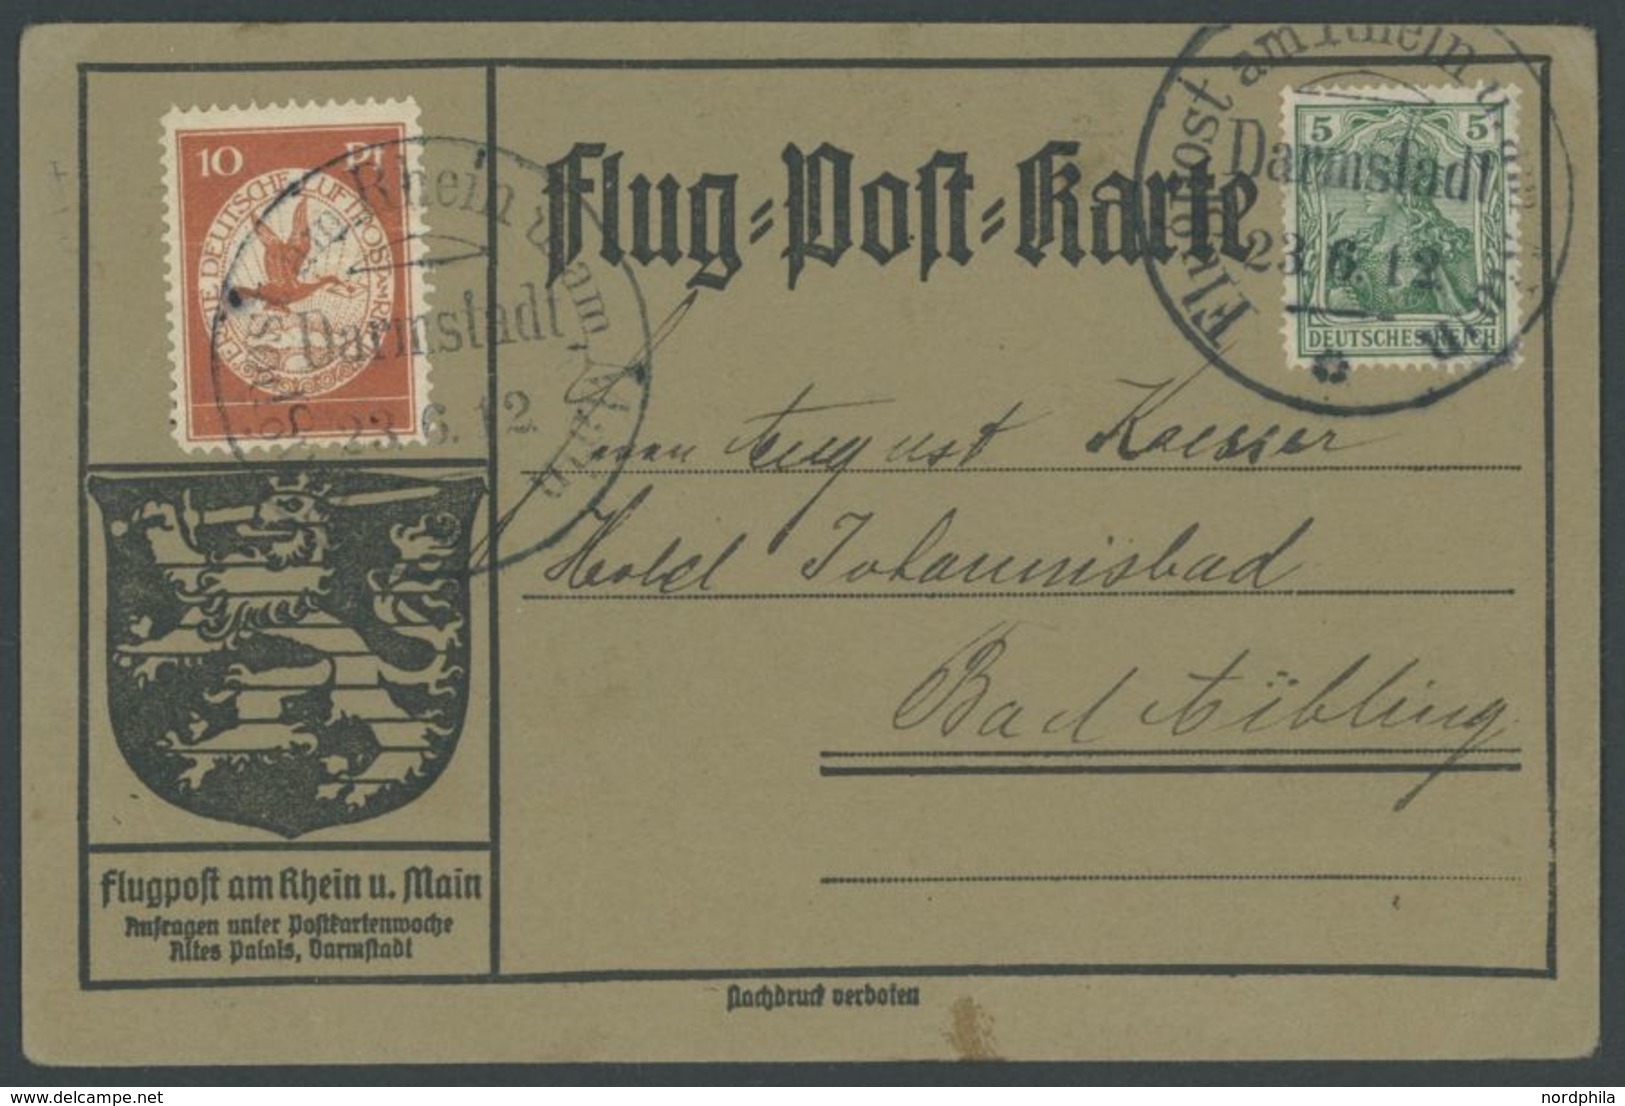 1912, 10 Pf. Flp. Am Rhein Und Main Auf Flugpostkarte Mit 5 Pf. Zusatzfrankatur, Sonderstempel Darmstadt 23.6.12, Feinst - Luft- Und Zeppelinpost